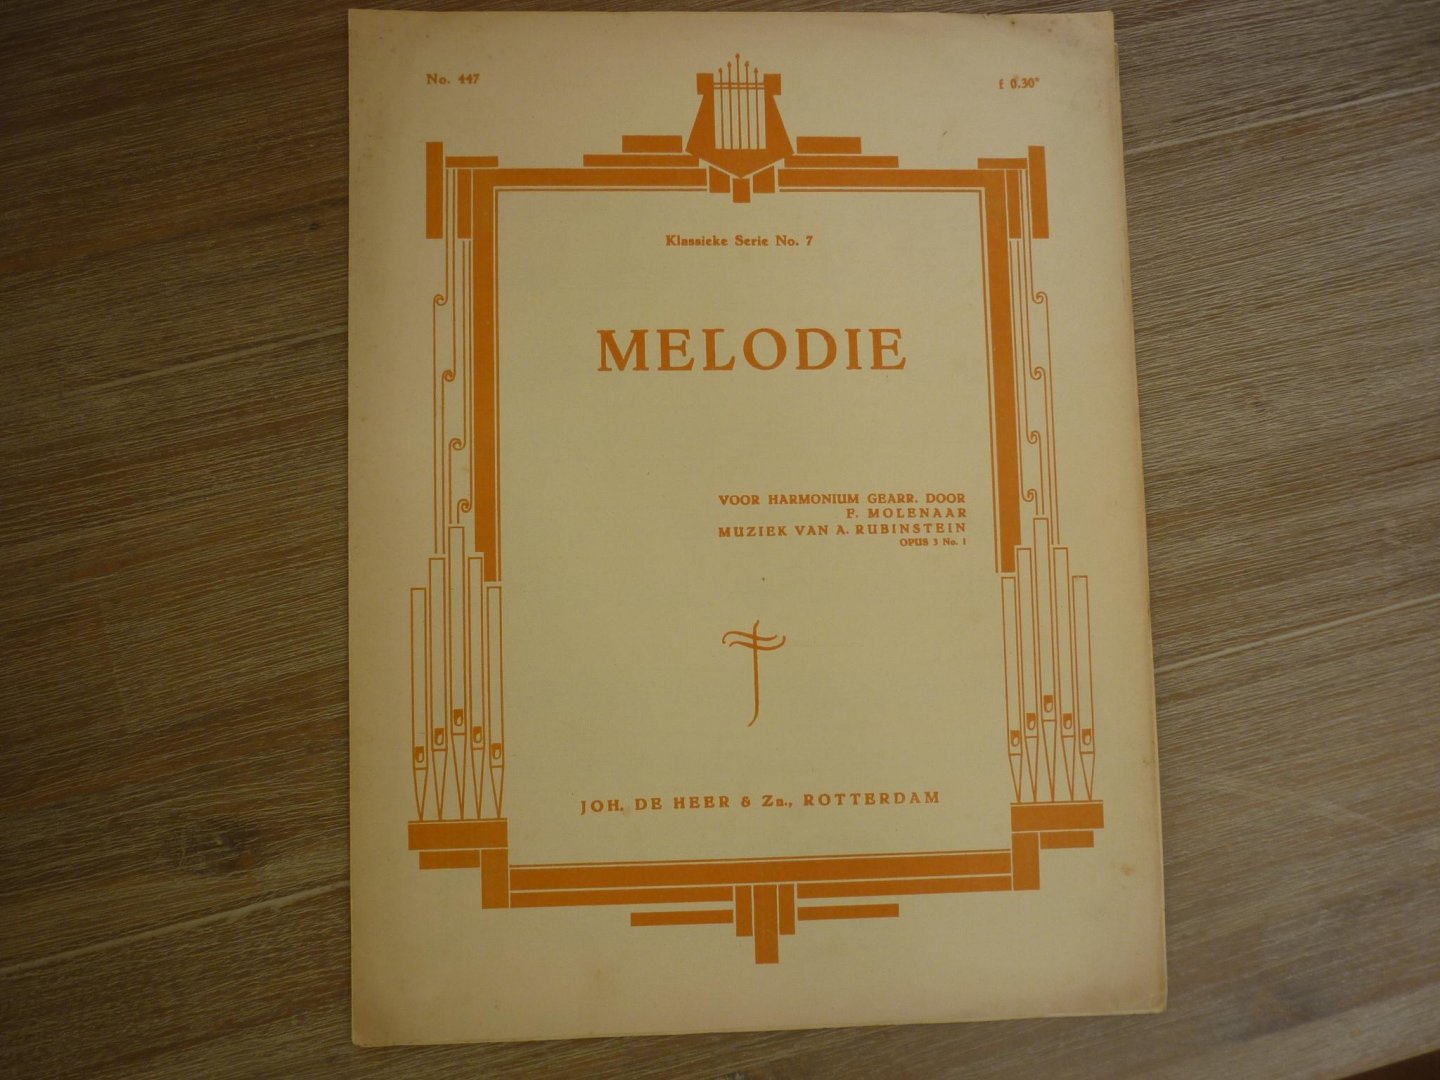 F. Molenaar  /  A. Rubinstein - Melodie (muziek van A. Rubinstein) - Klassieke serie no. 7